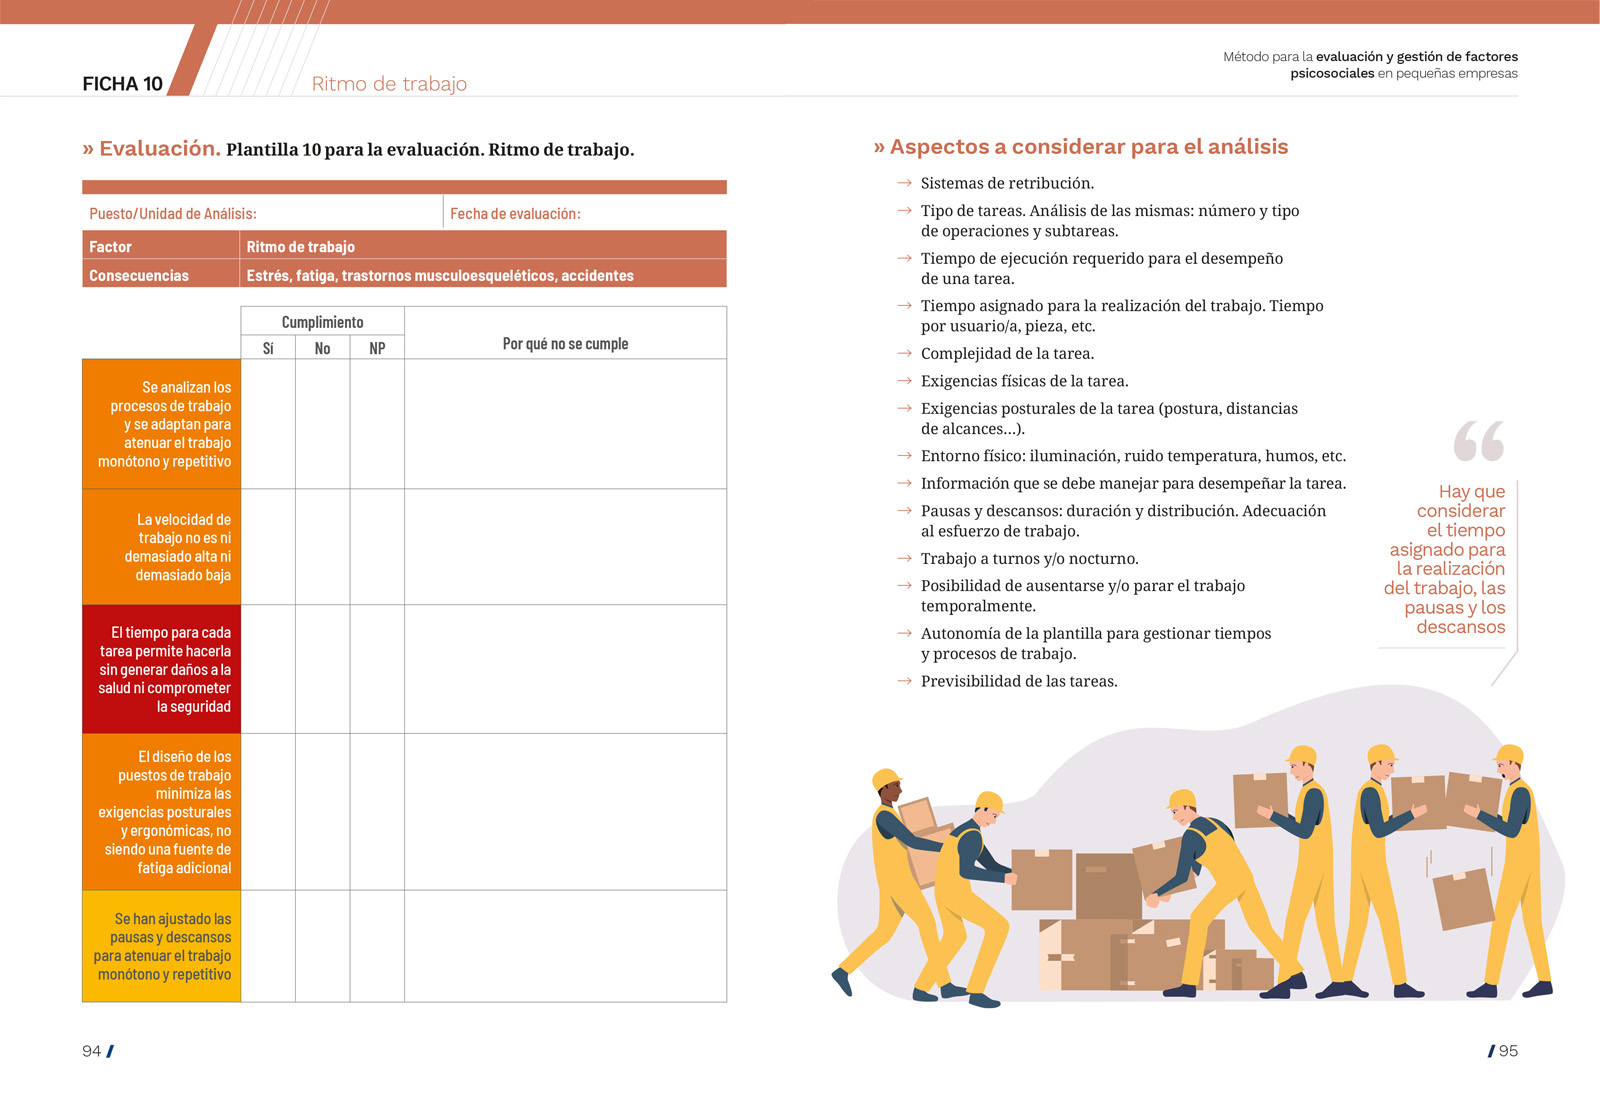 Diseño y maquetación de Método para la evaluación y gestión de los factores psicosociales en pequeñas empresas